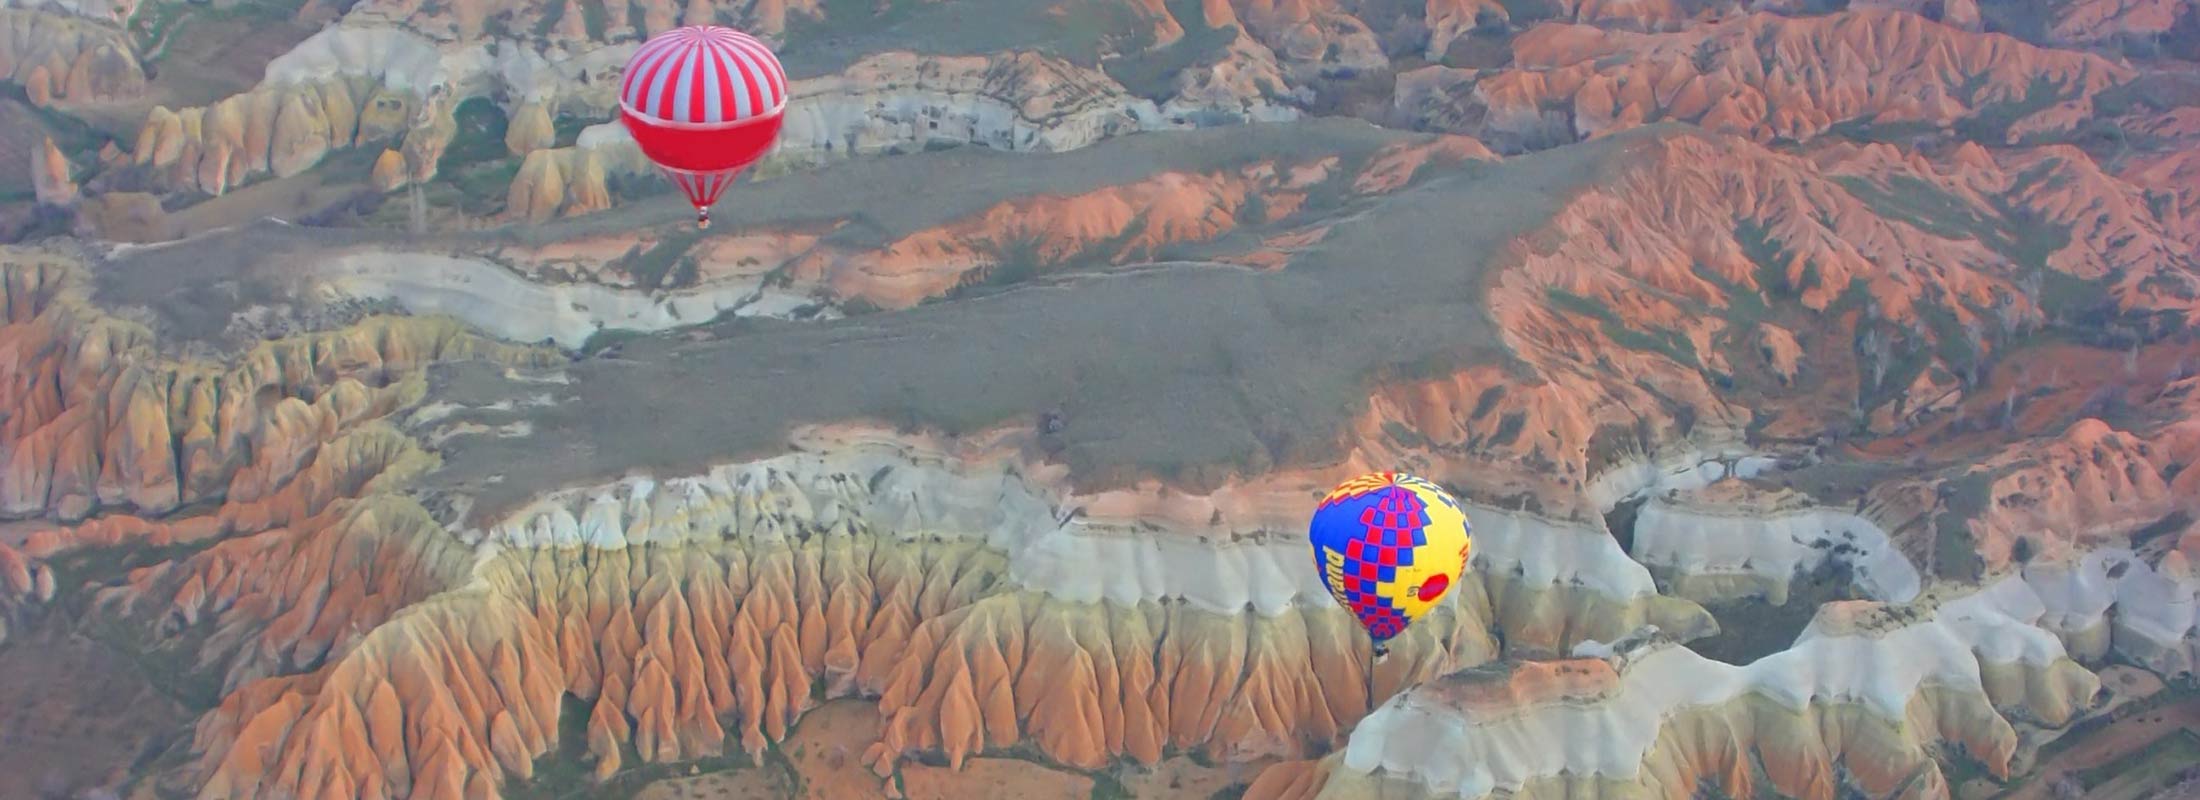 Istanbul Air Balloon Adventure Travel Tour 35